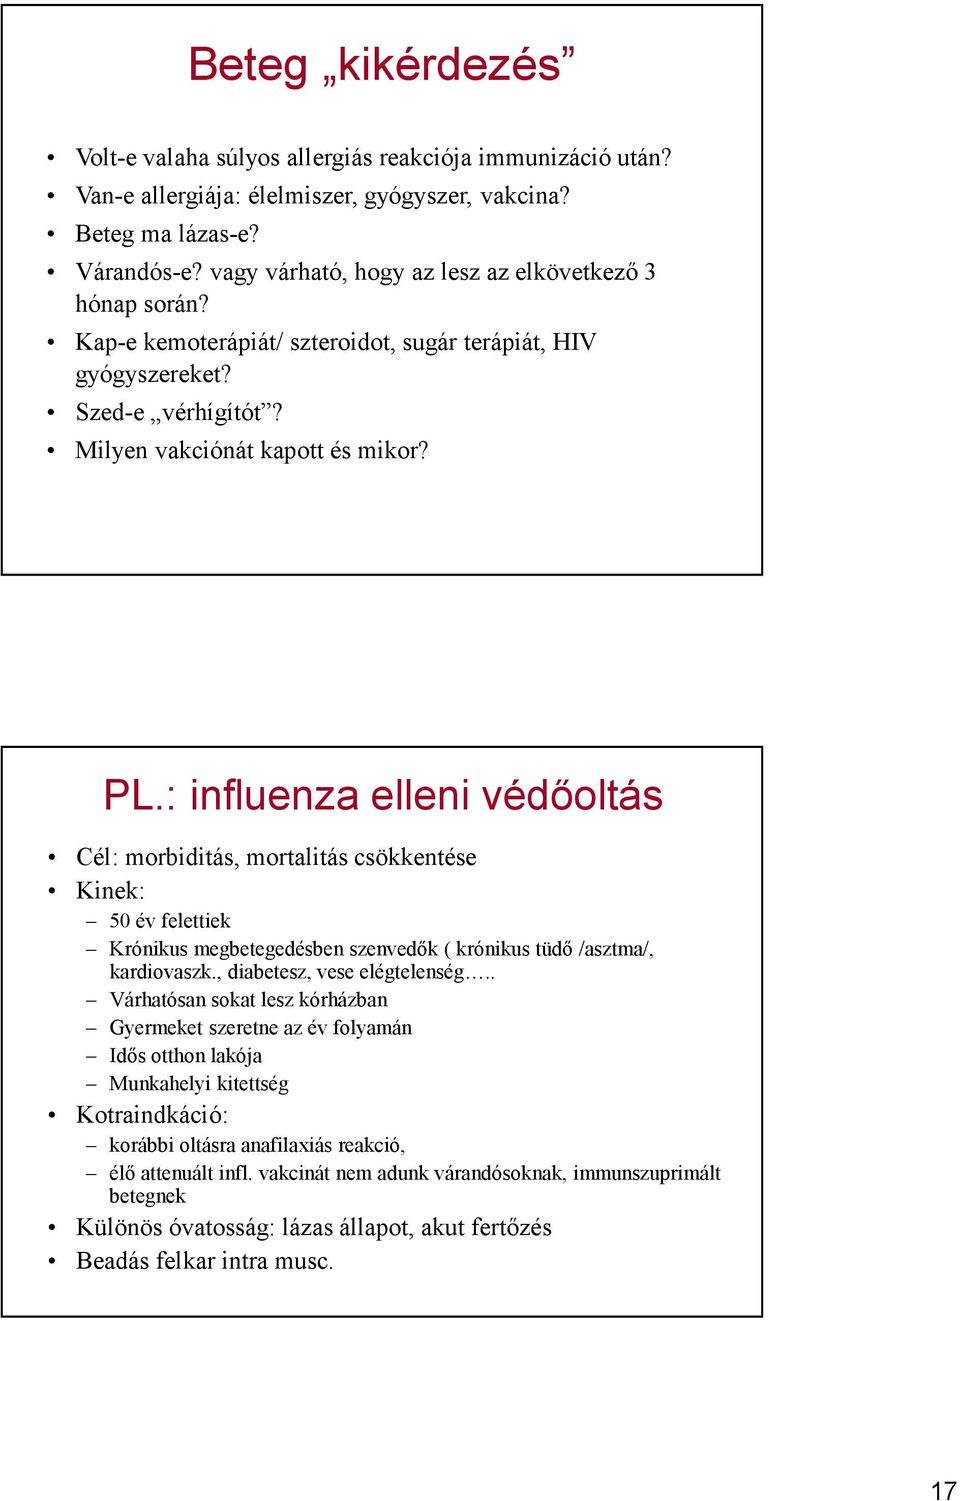 : influenza elleni védőoltás Cél: morbiditás, mortalitás csökkentése Kinek: 50 év felettiek Krónikus megbetegedésben szenvedők ( krónikus tüdő /asztma/, kardiovaszk., diabetesz, vese elégtelenség.